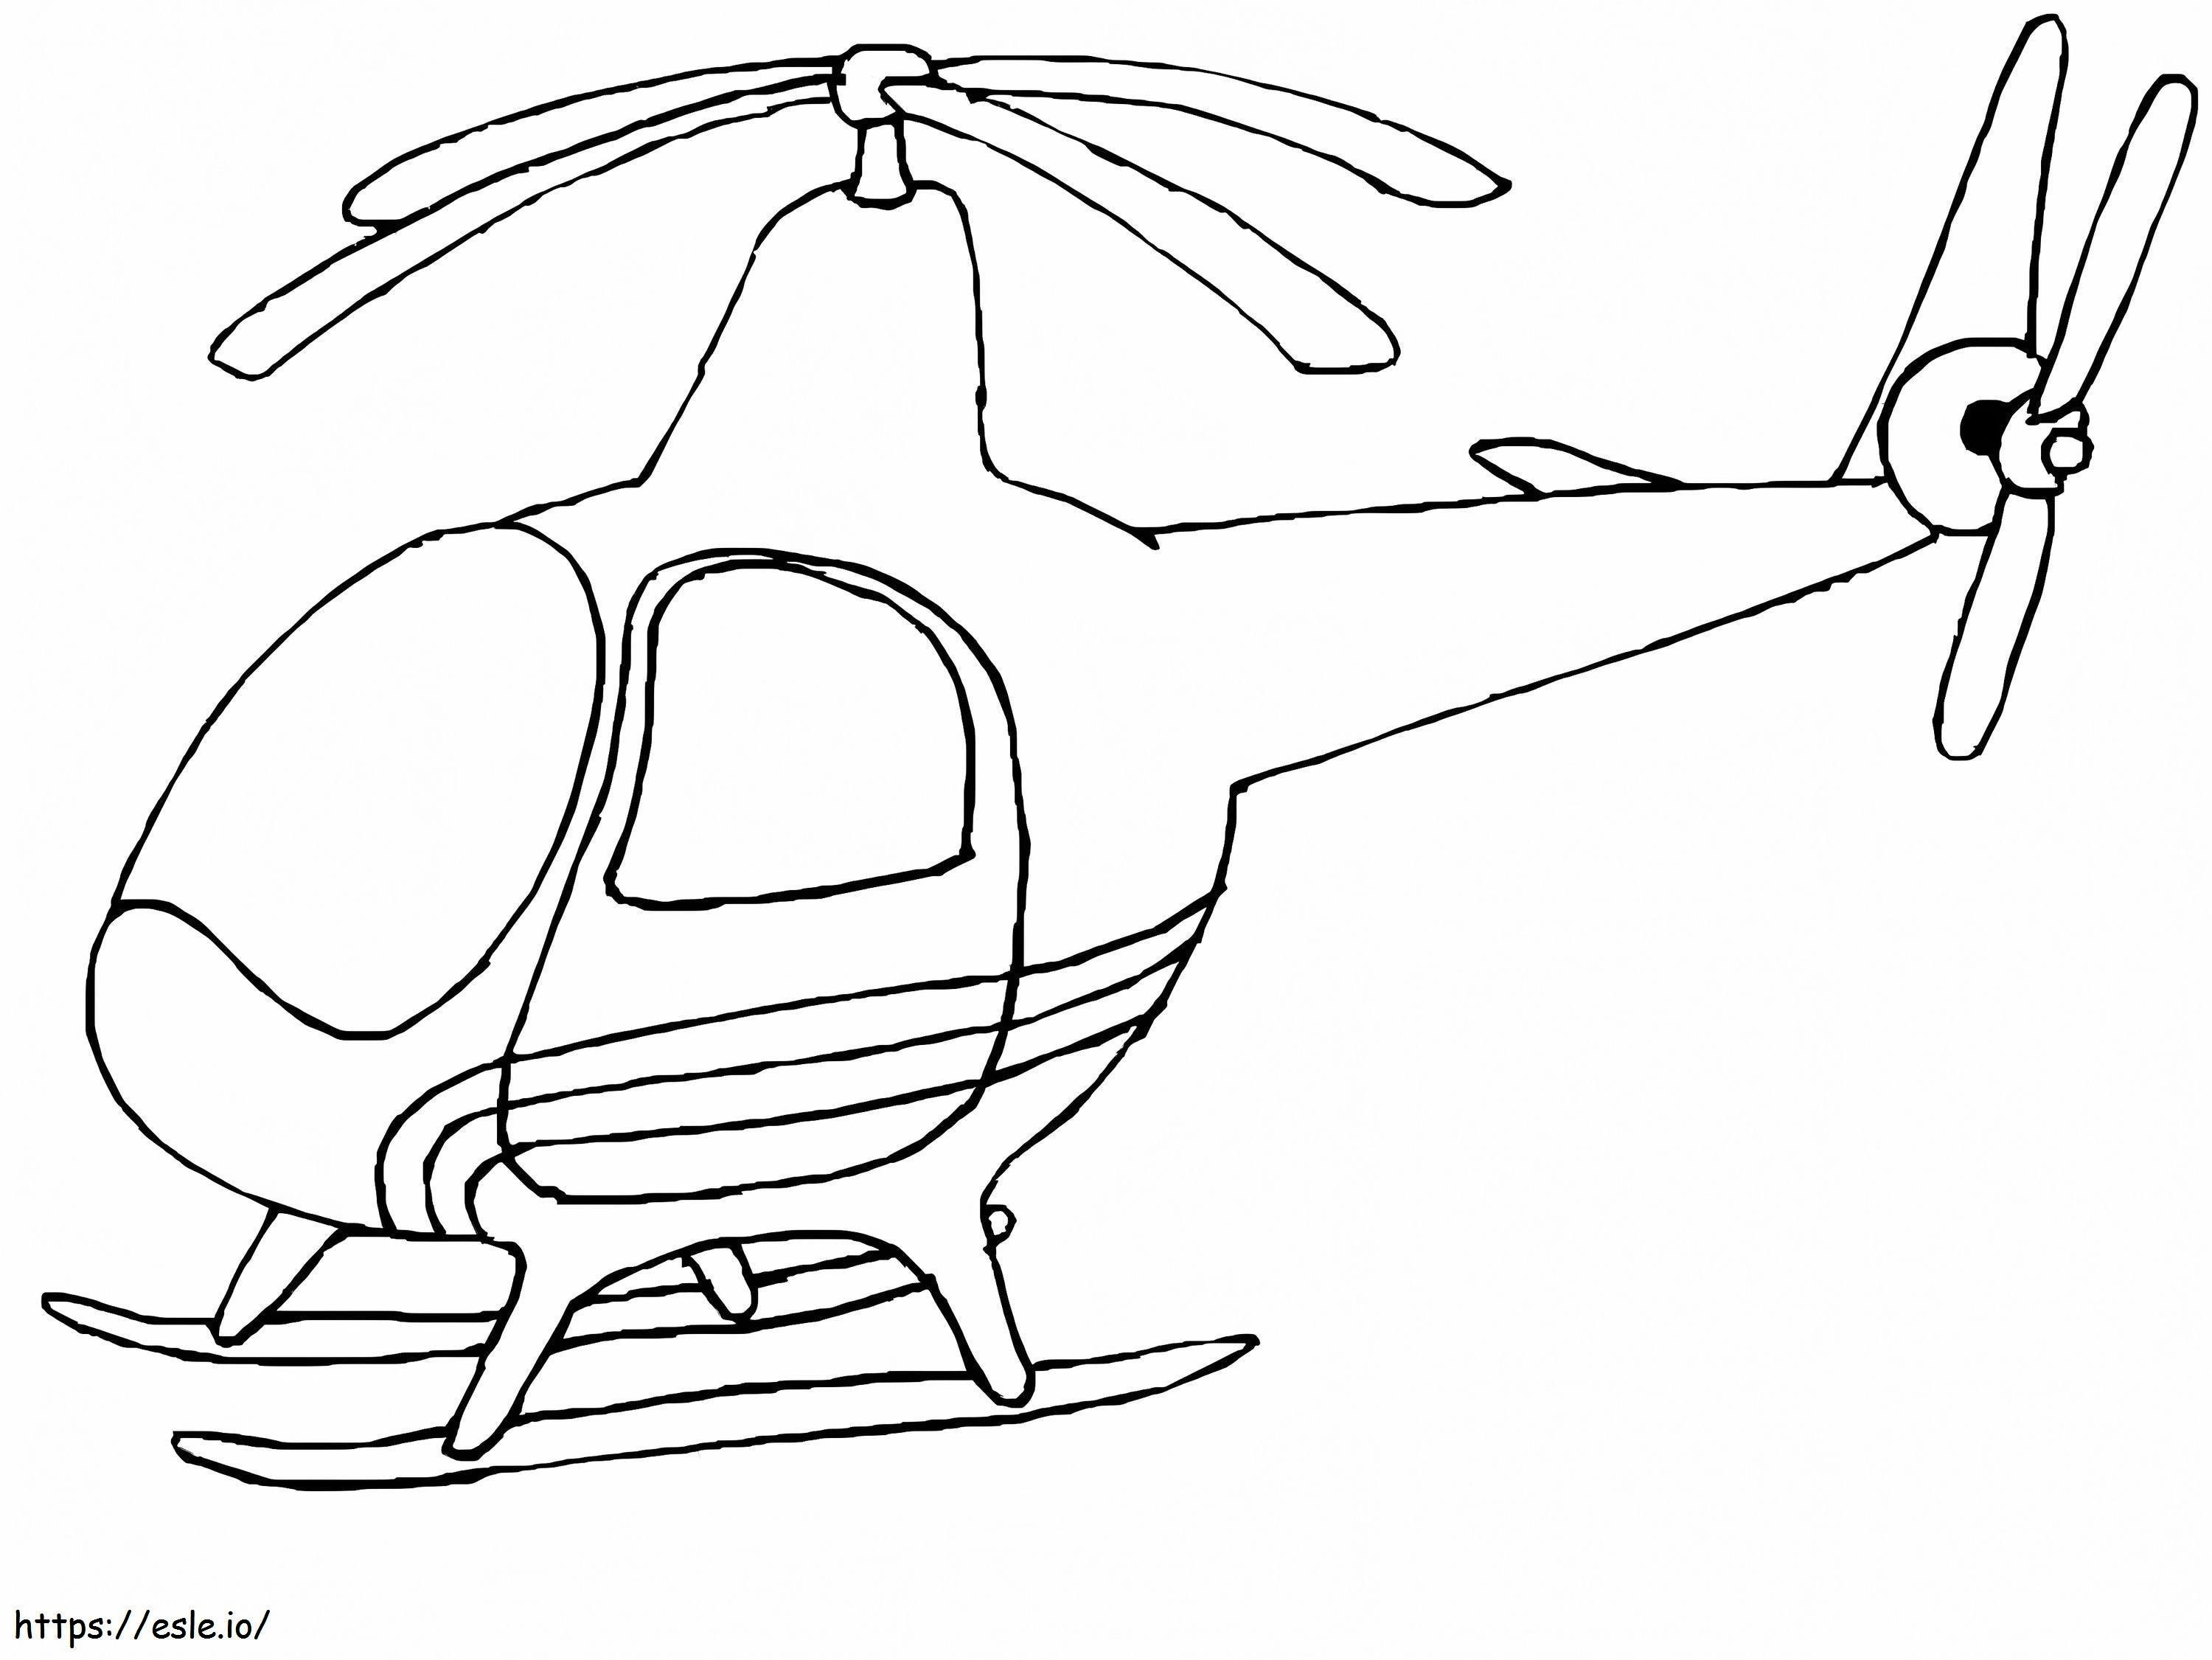 Normaler Hubschrauber 2 ausmalbilder